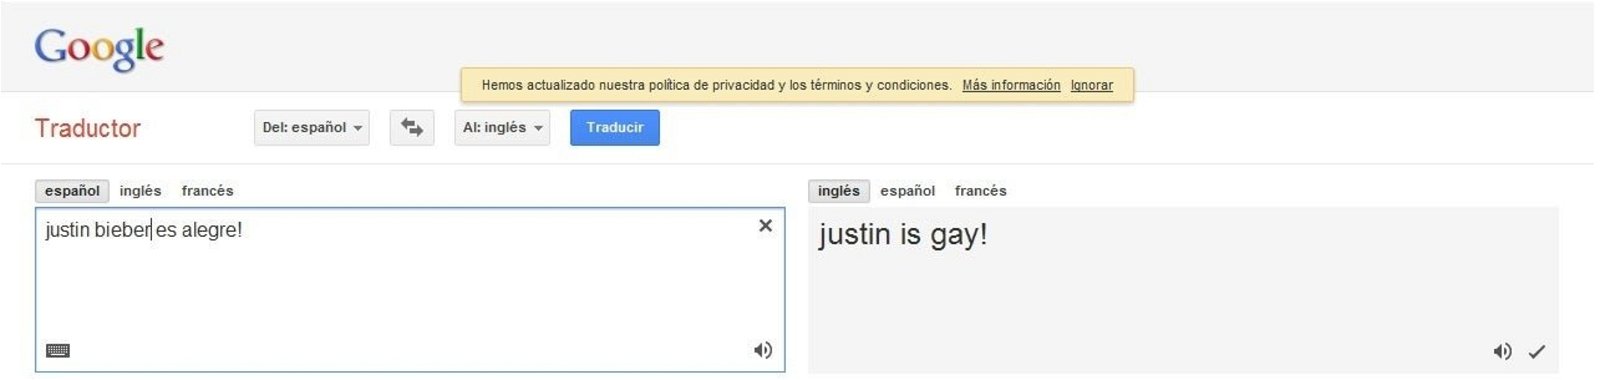 Justin bieber es gay